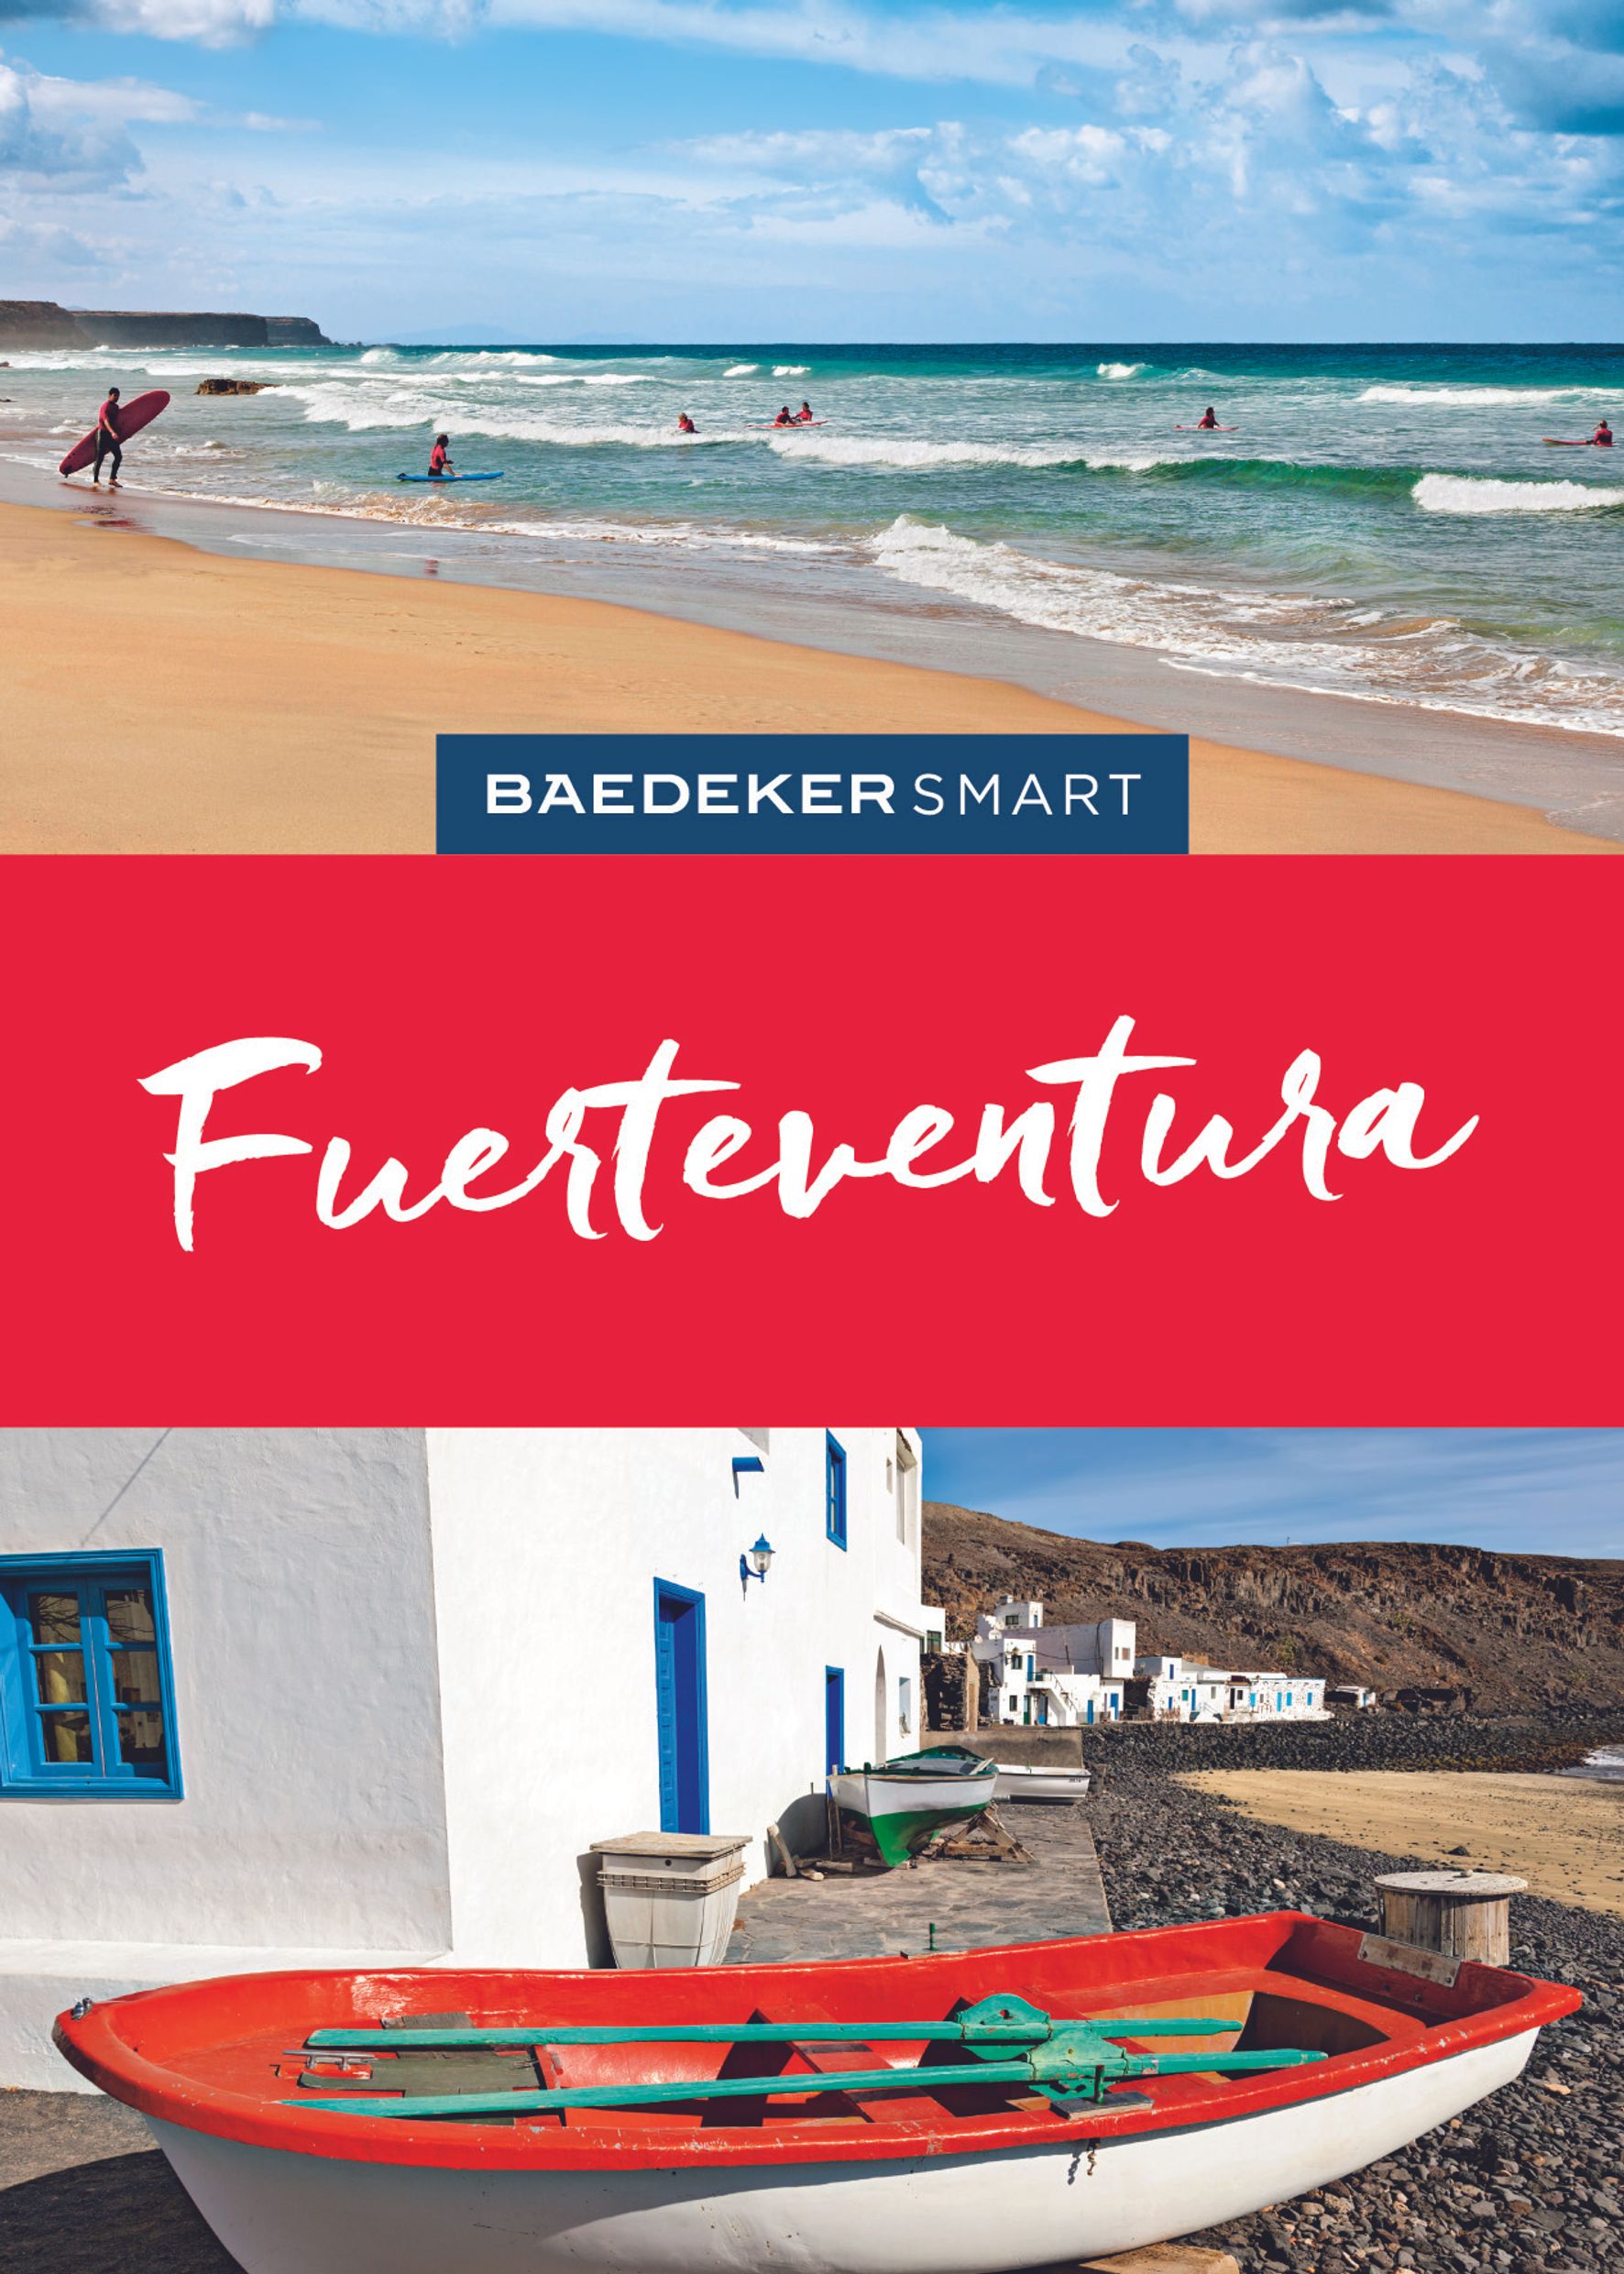 Baedeker Fuerteventura